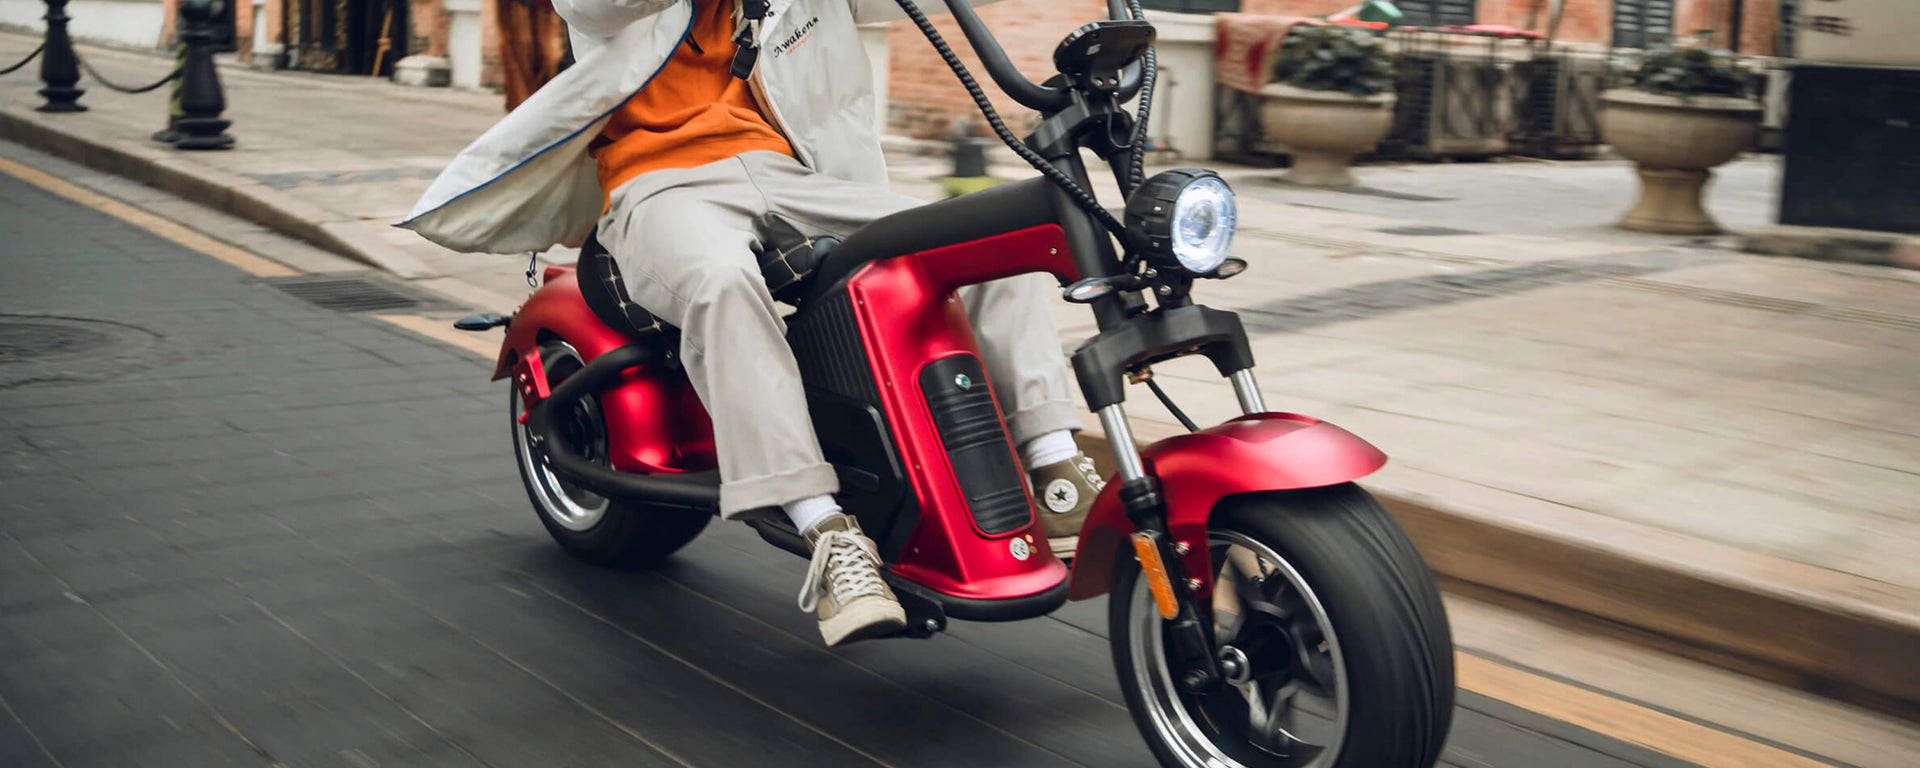 Electric Scooter | Electric Moped Scooter | Electric Chopper Scooter